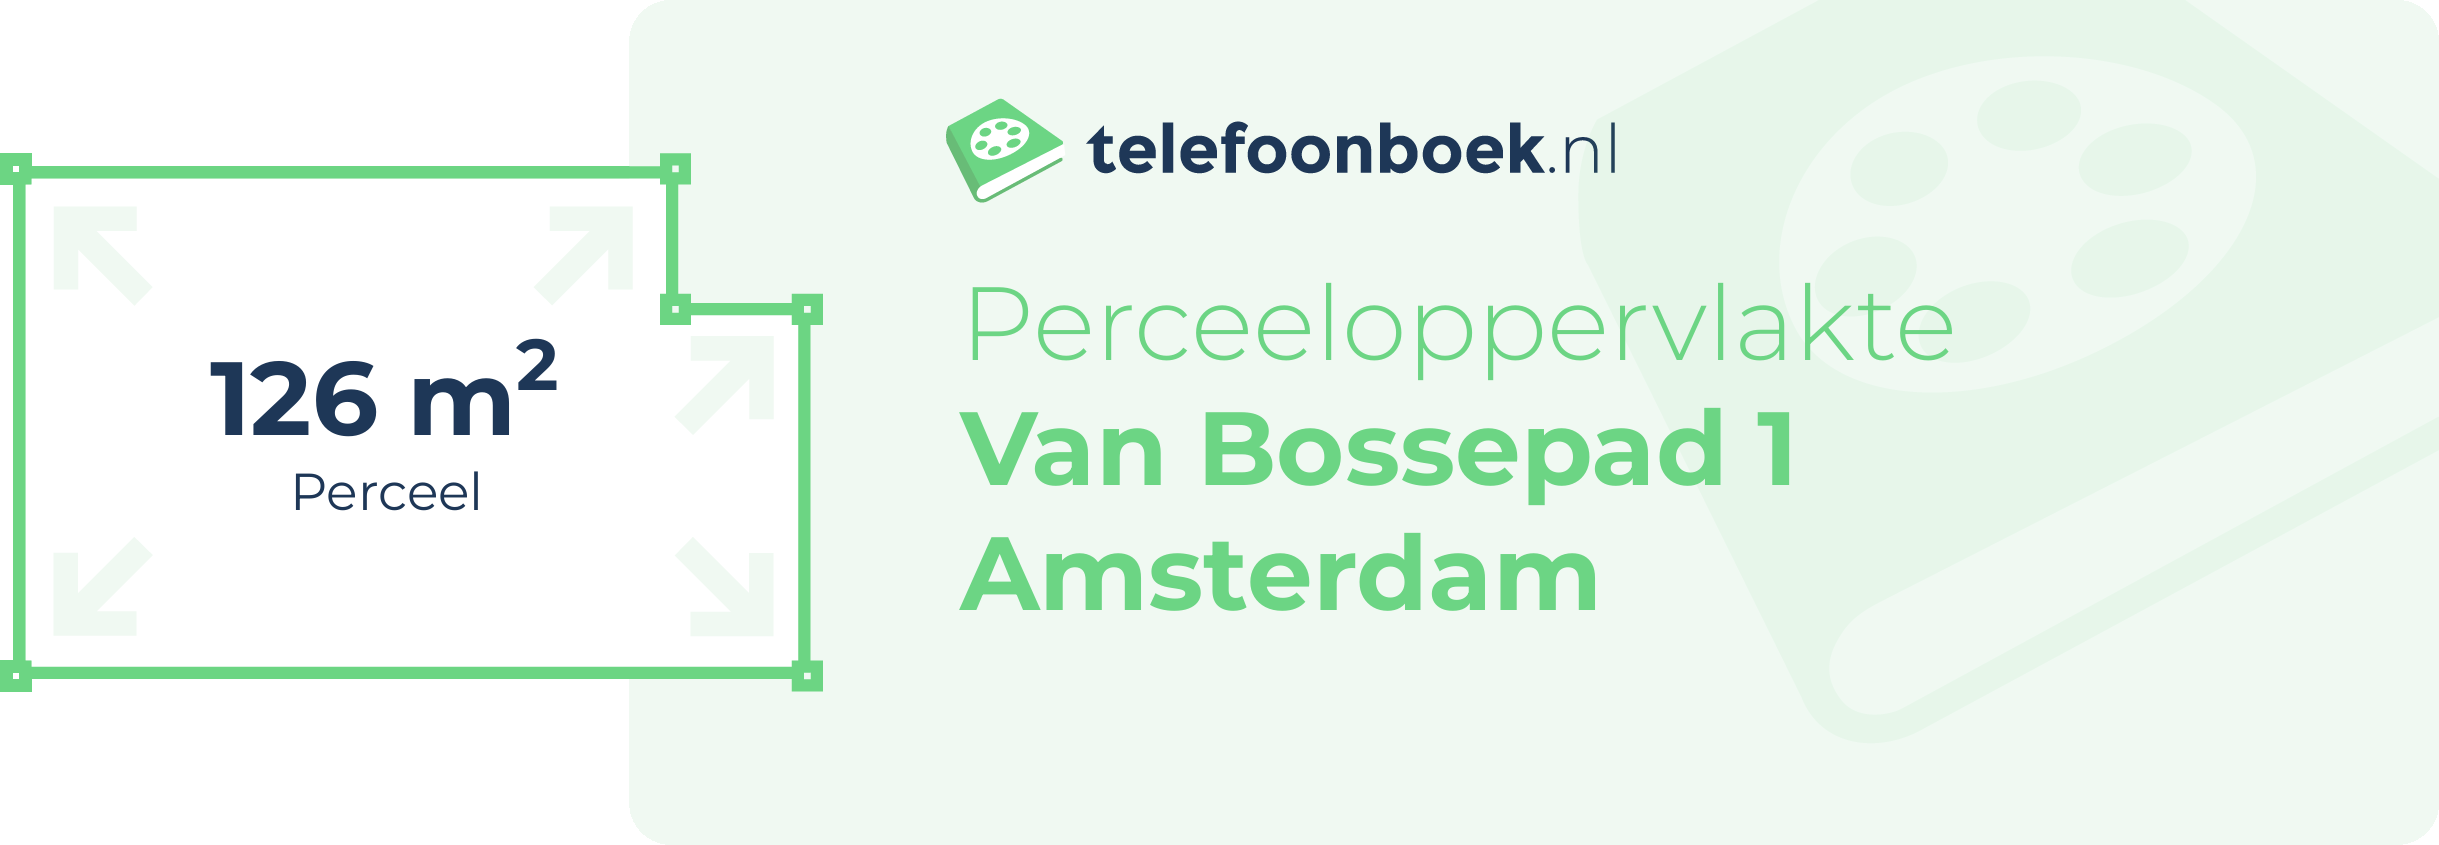 Perceeloppervlakte Van Bossepad 1 Amsterdam